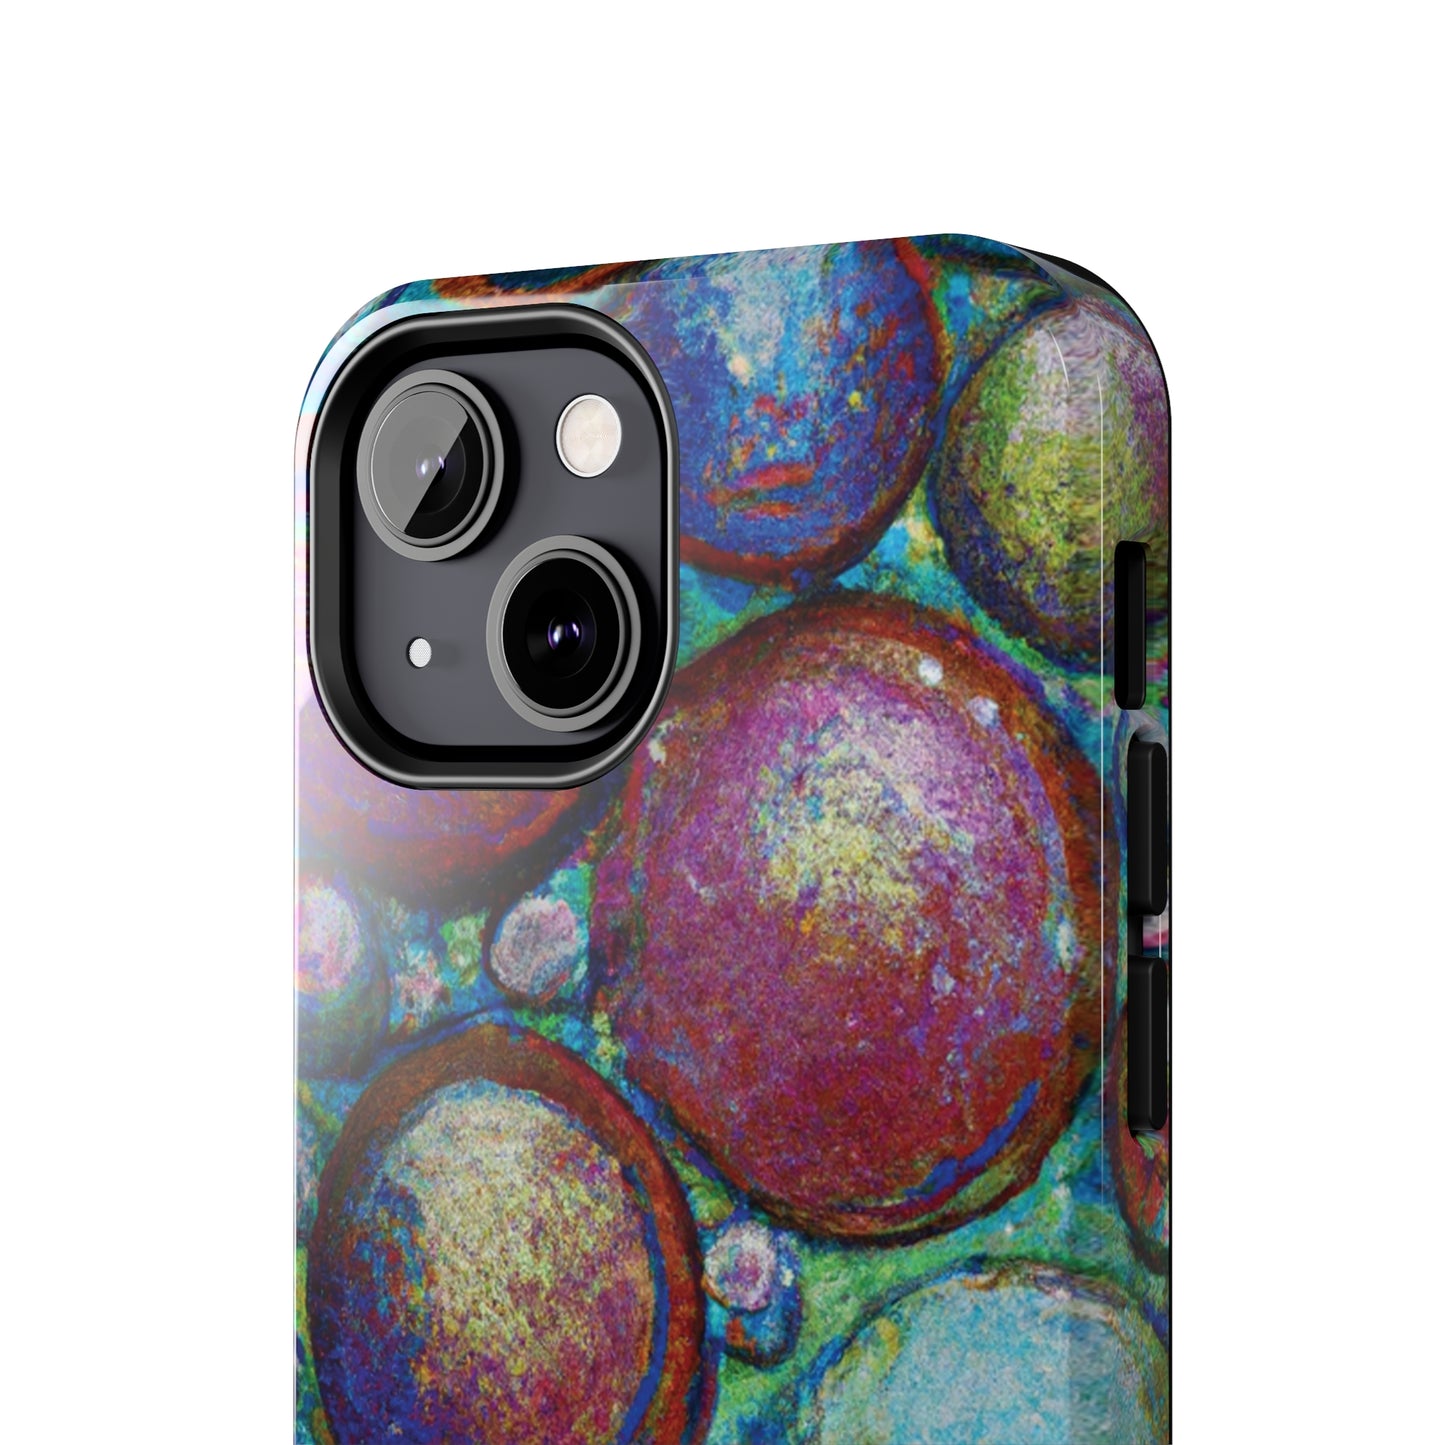 Tough Apple iPhone Cases Ft. Big Acrylic Bubbles